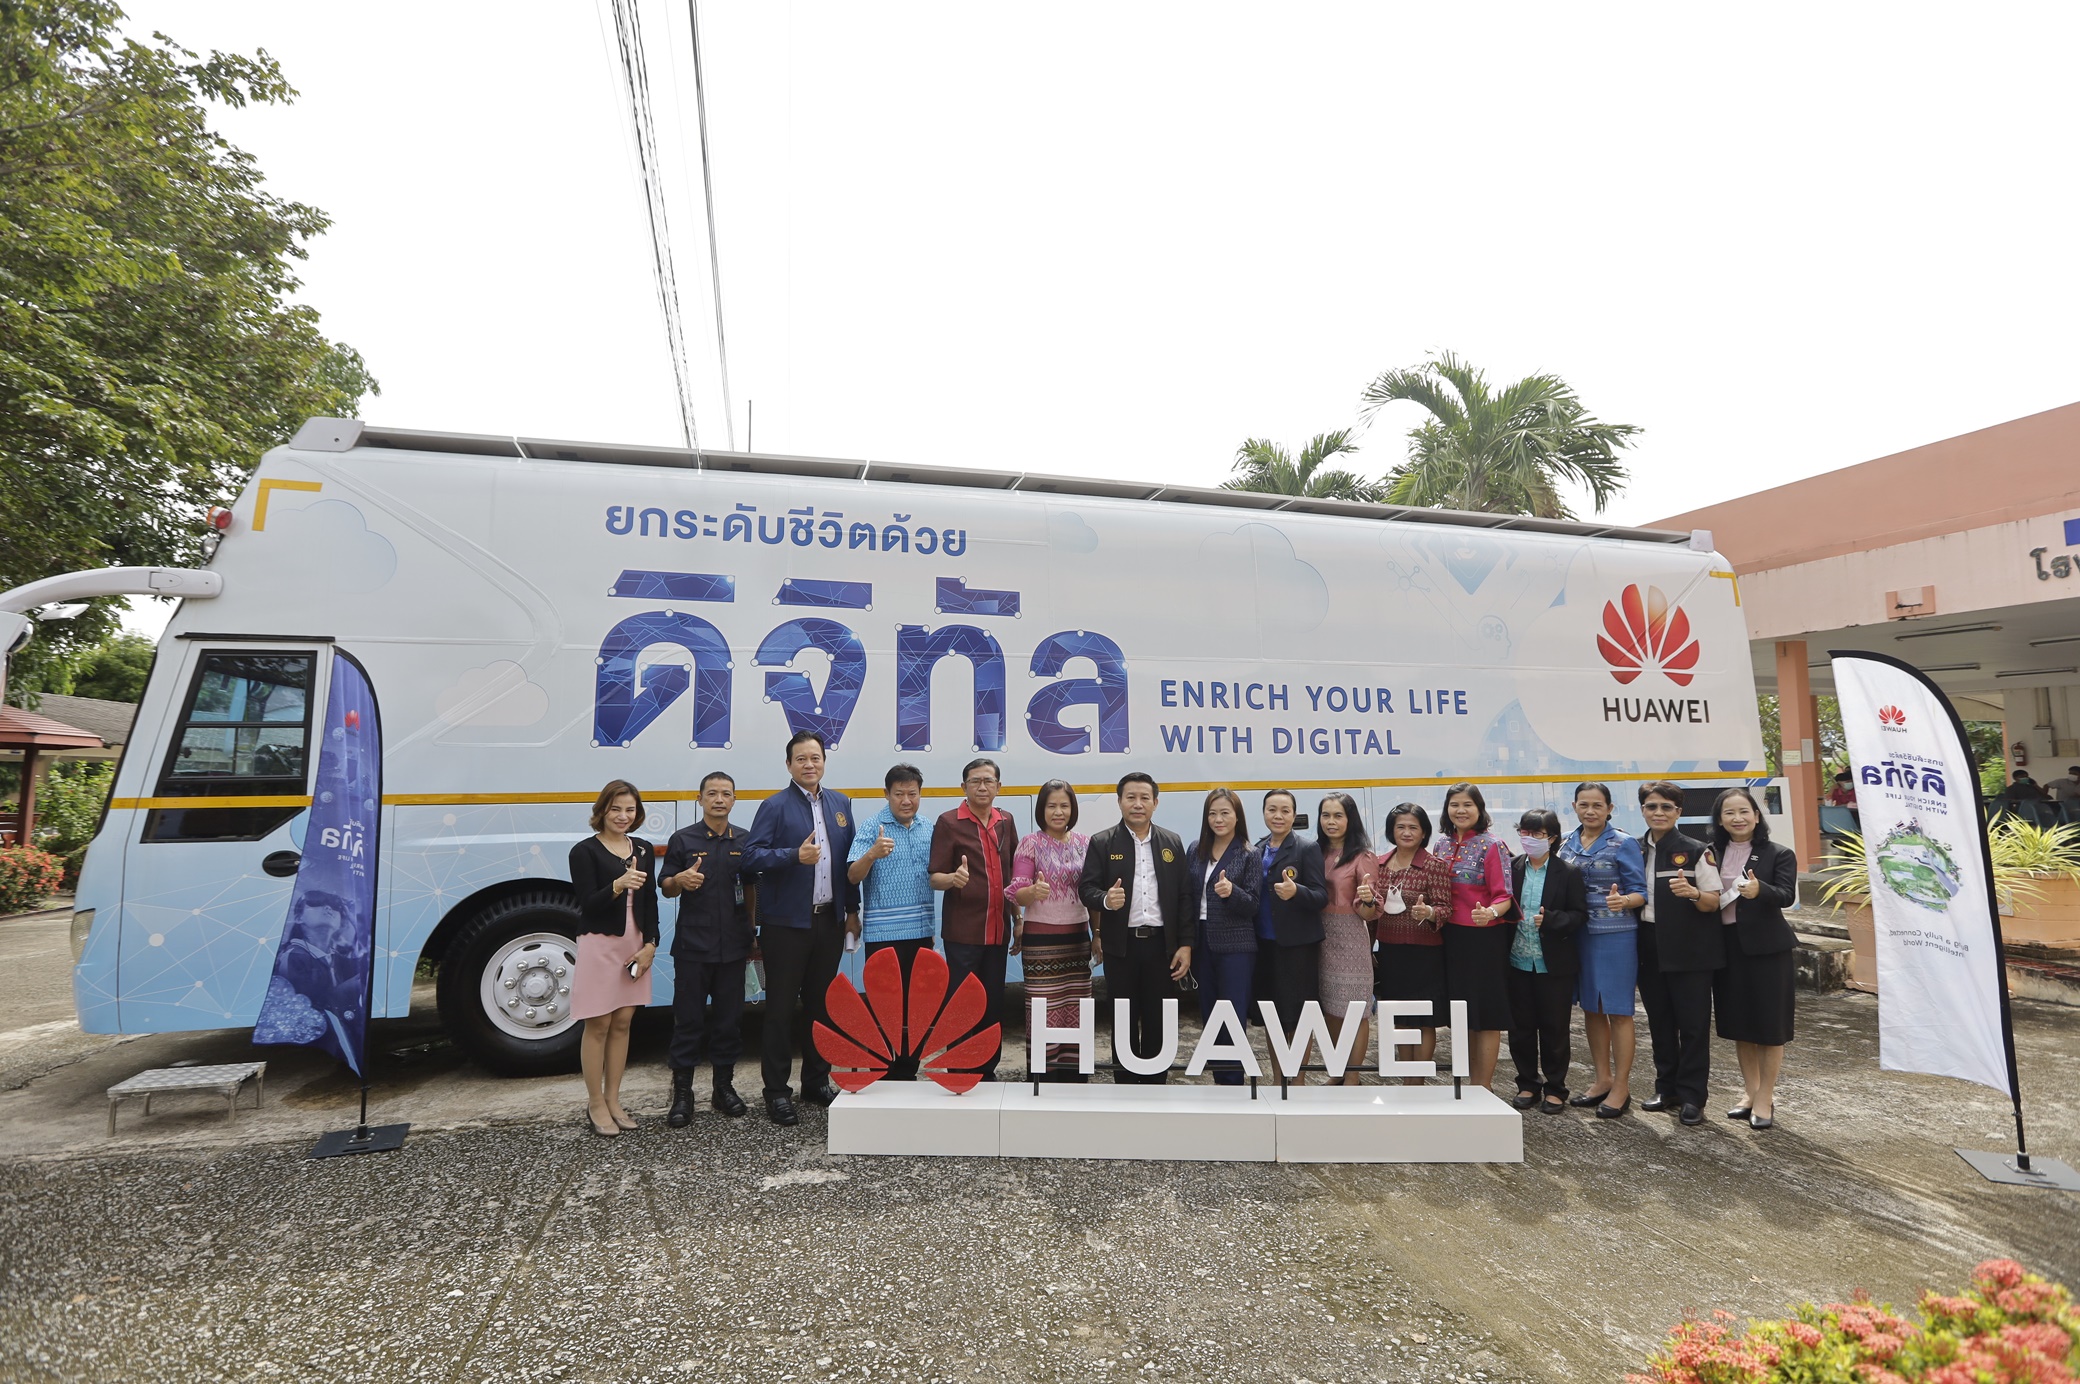 Huawei มุ่งมั่นยกระดับการศึกษาไทย เดินหน้าต่อยอดโครงการ “รถดิจิทัลเพื่อสังคม” พัฒนาทักษะดิจิทัลให้แรงงานในจังหวัดเพชรบูรณ์